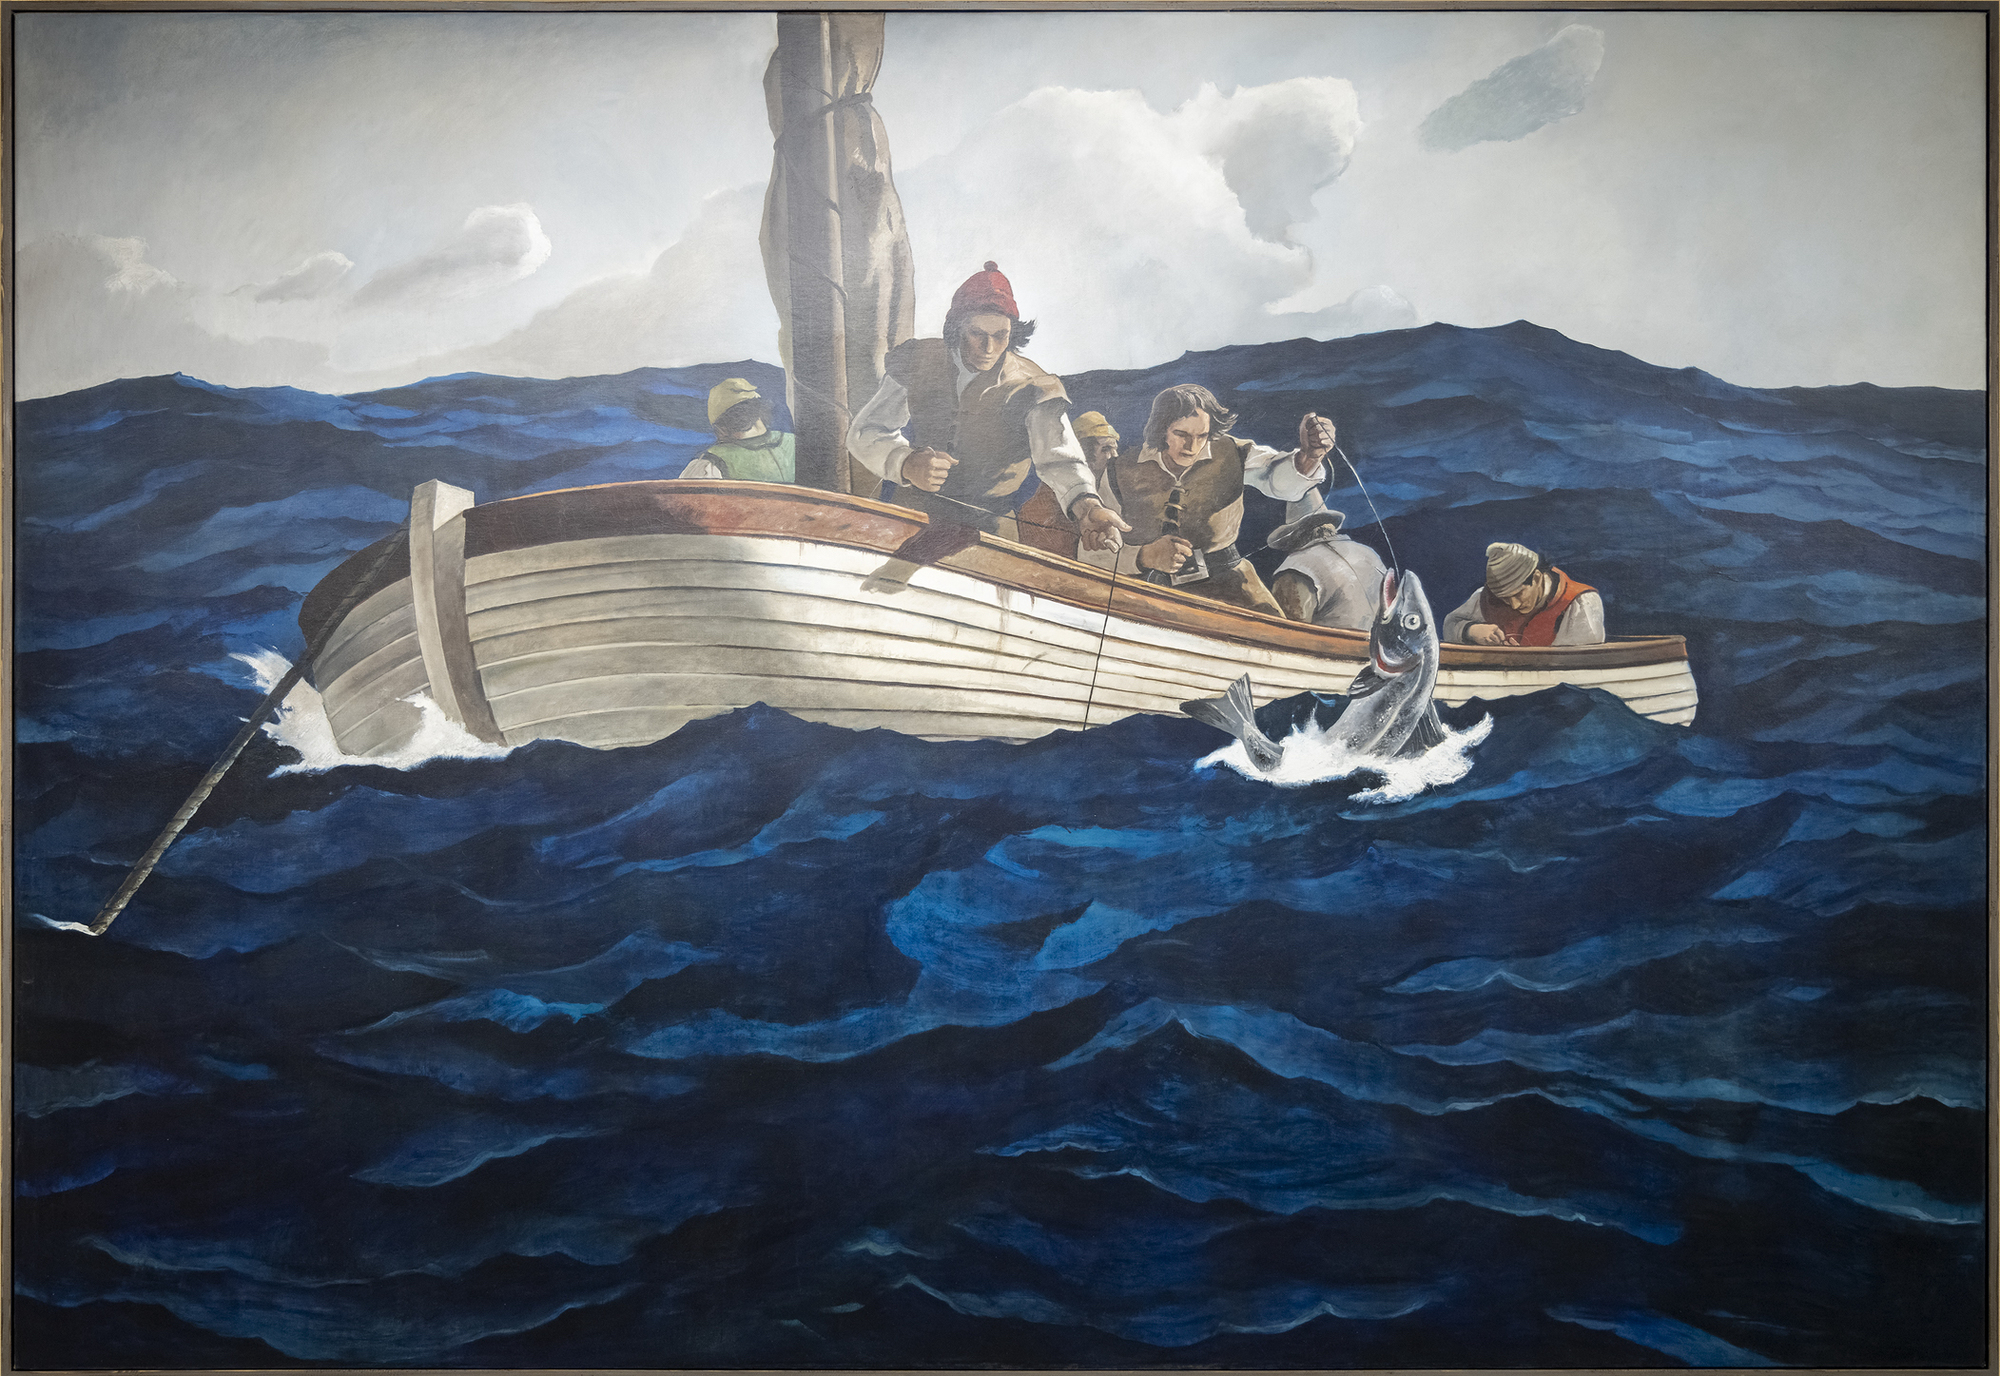 根据布兰迪温河艺术博物馆编制的目录，《清教徒鳕鱼》的初稿是 N. C. 怀斯在 1945 年 10 月去世前完成的。该条目记录了草图的图像、艺术家的题词及其标题《Puritan Cod Fishers》，目录将其描述为 "备用"。无论是哪种情况，这幅大型画布都是一件独一无二的作品，安德鲁-怀斯后来回忆说，这幅画完全是由他亲手绘制的，是父亲的设计和构图与出色的儿子的执行合作的成果。对安德鲁来说，这一定是一次感触颇深的情感体验。鉴于父亲对细节和真实性的关注，这艘小帆船的线条代表了十六世纪使用的藠头。另一方面，安德鲁很可能比他父亲更深地描绘了躁动不安的大海的色调，这一选择恰如其分地突出了任务的危险性。